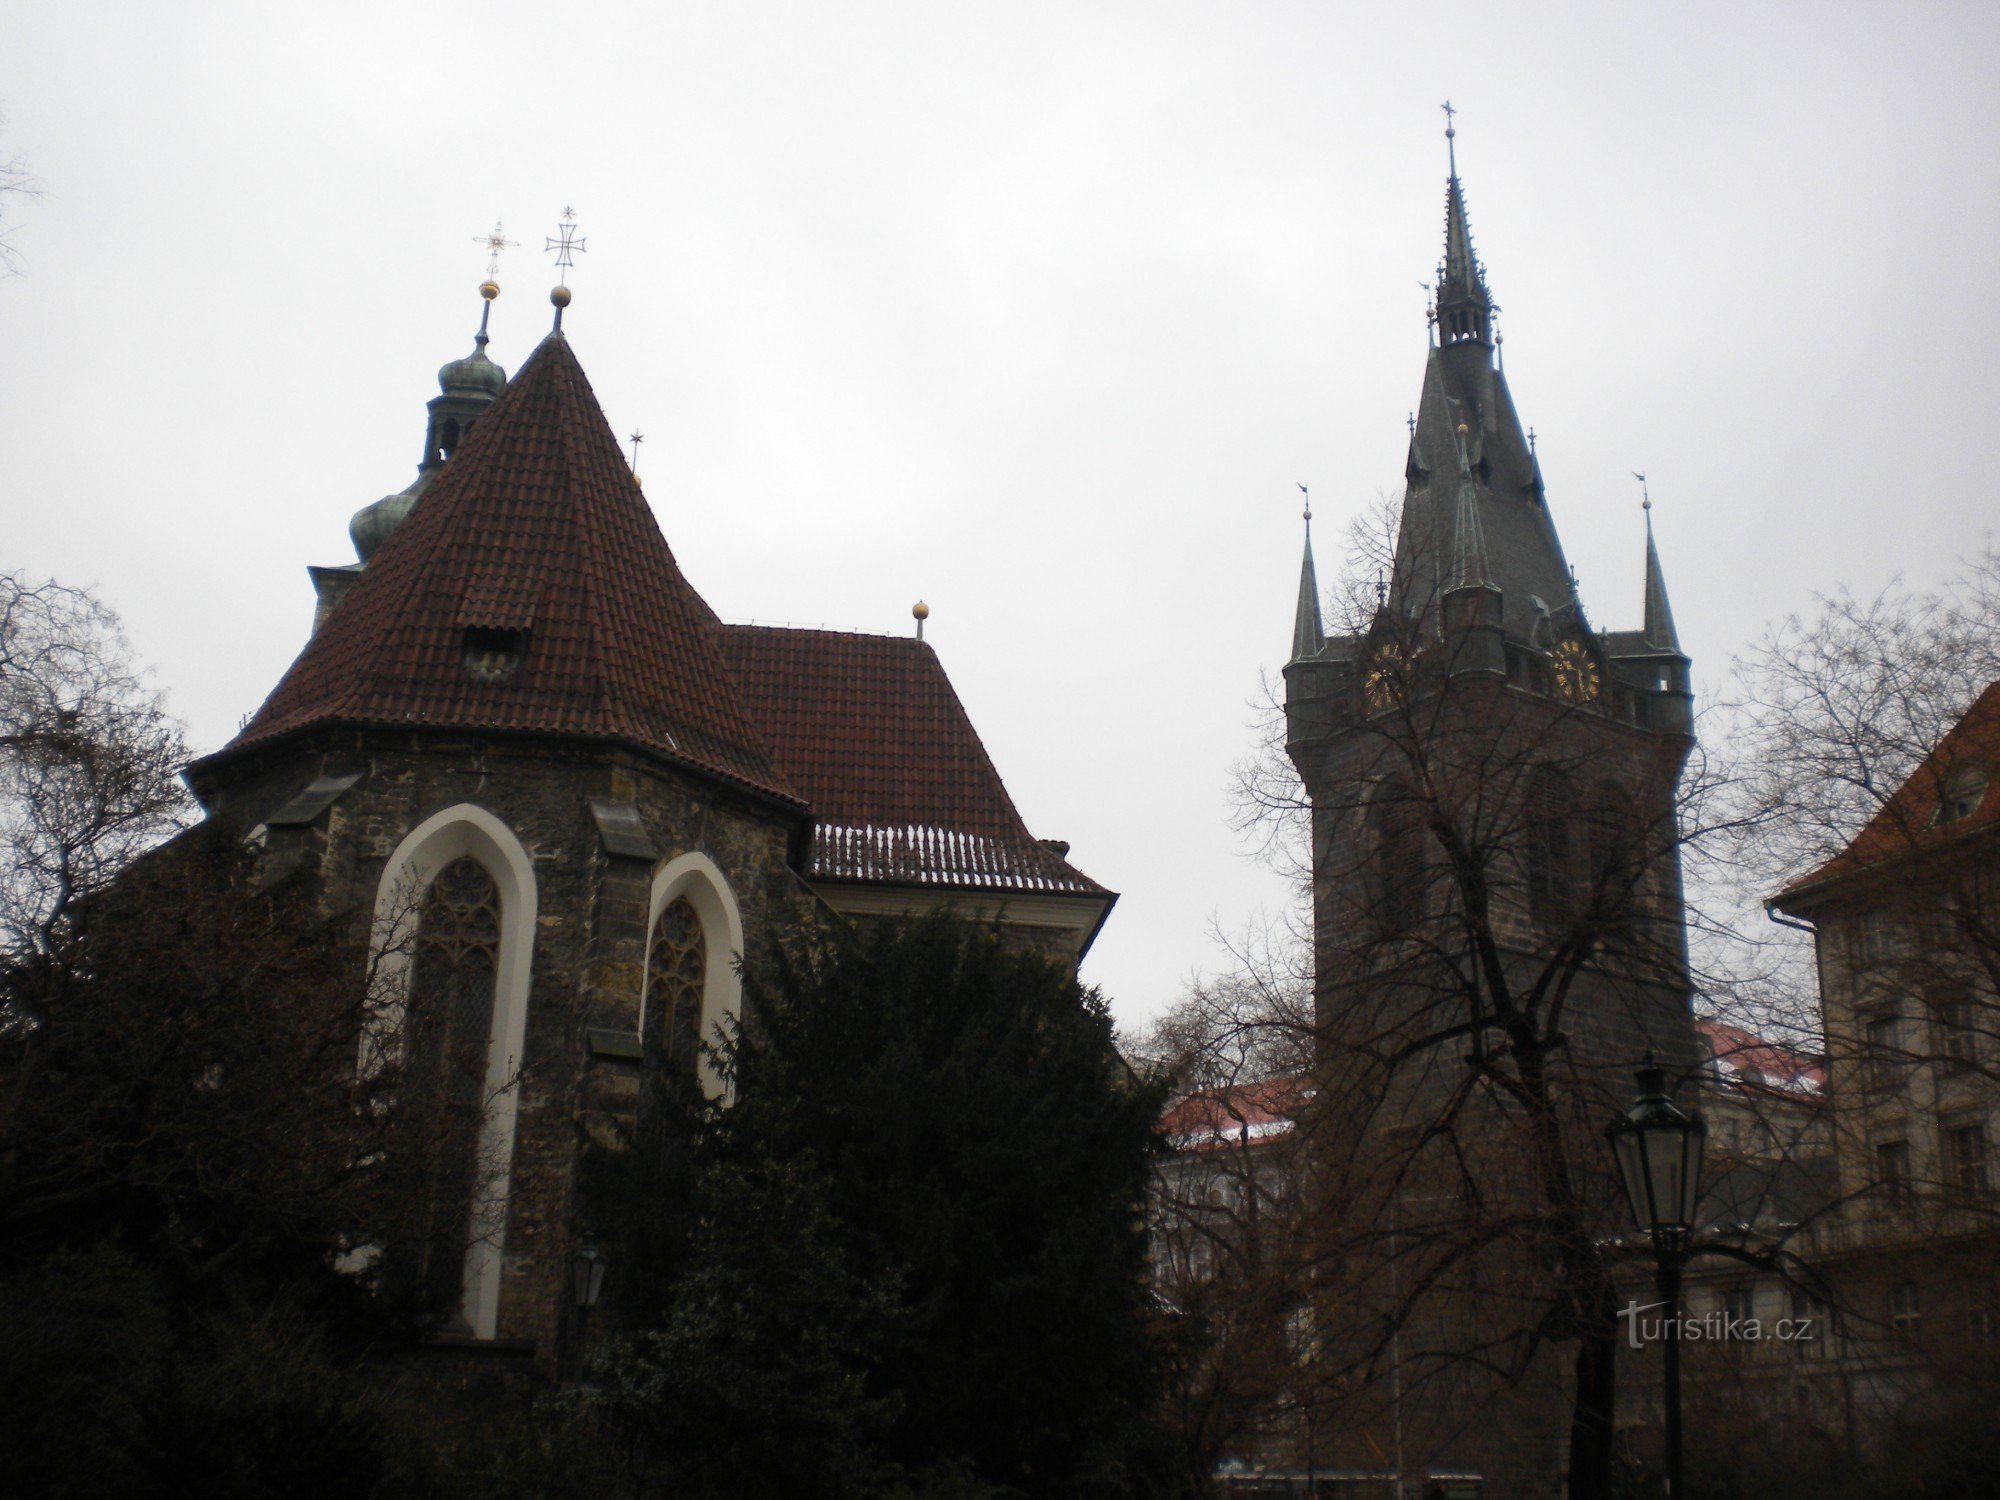 Szent Henrik és Szent Kunhůta templom a Jindřiš toronyból.